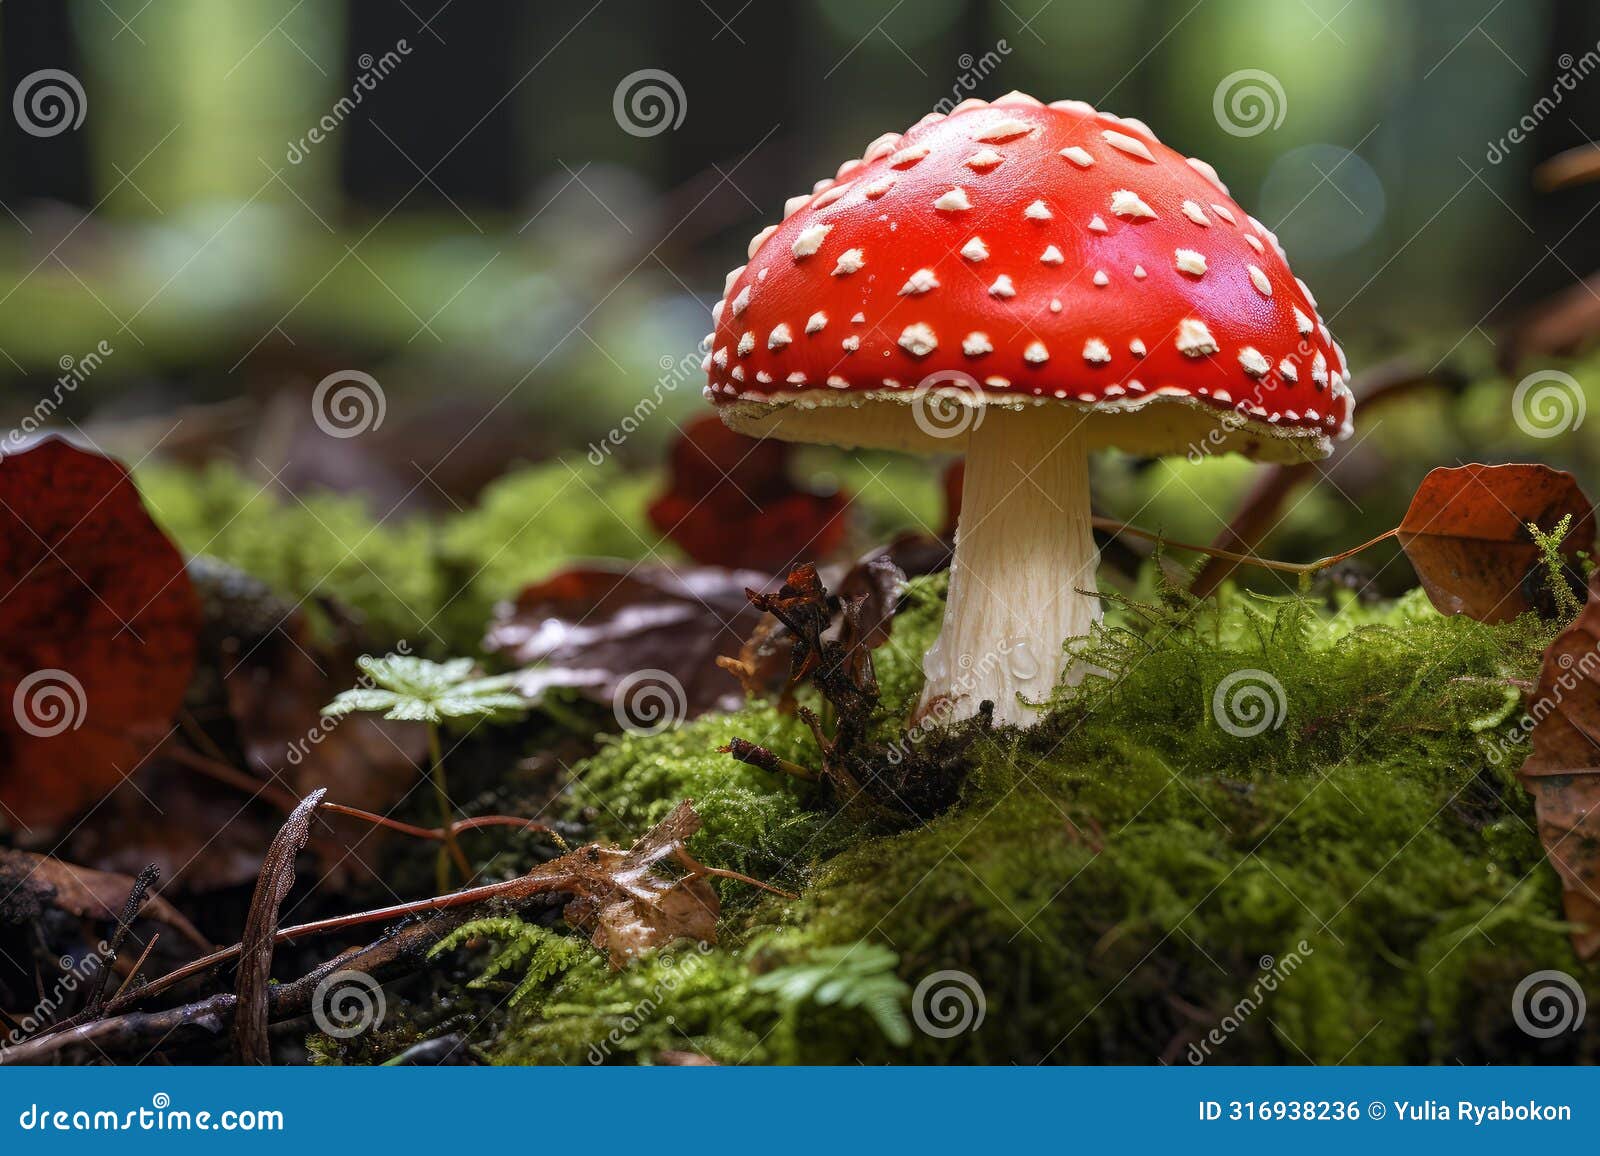 lethal red toadstool mushroom danger. generate ai